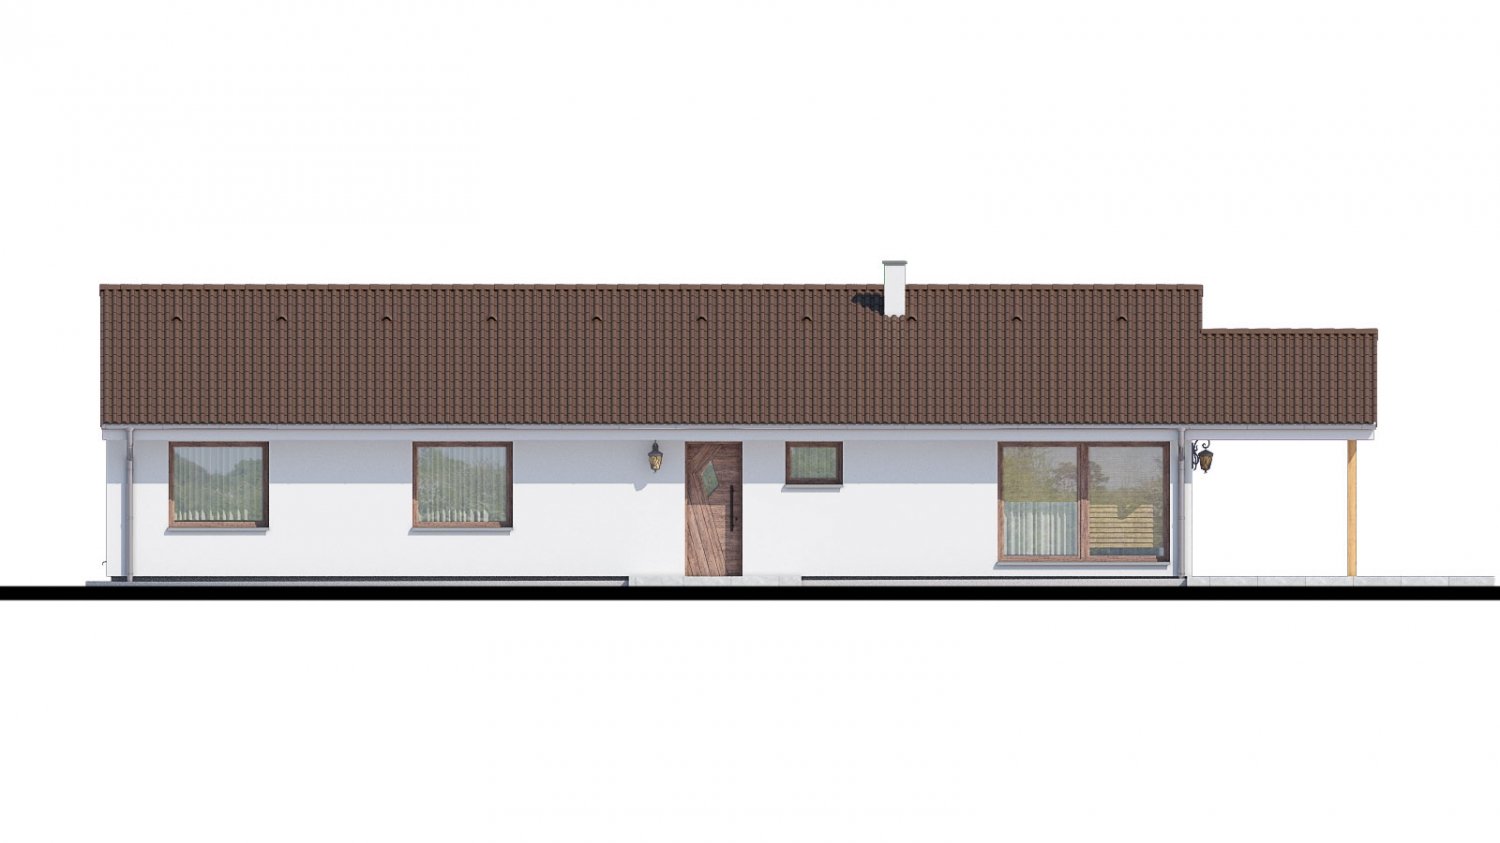 Pohľad 1. - Top projekt 2019 rodinného domu se sedlovou střechou. Zpracovaný ve virtuální realitě se zařizováním.